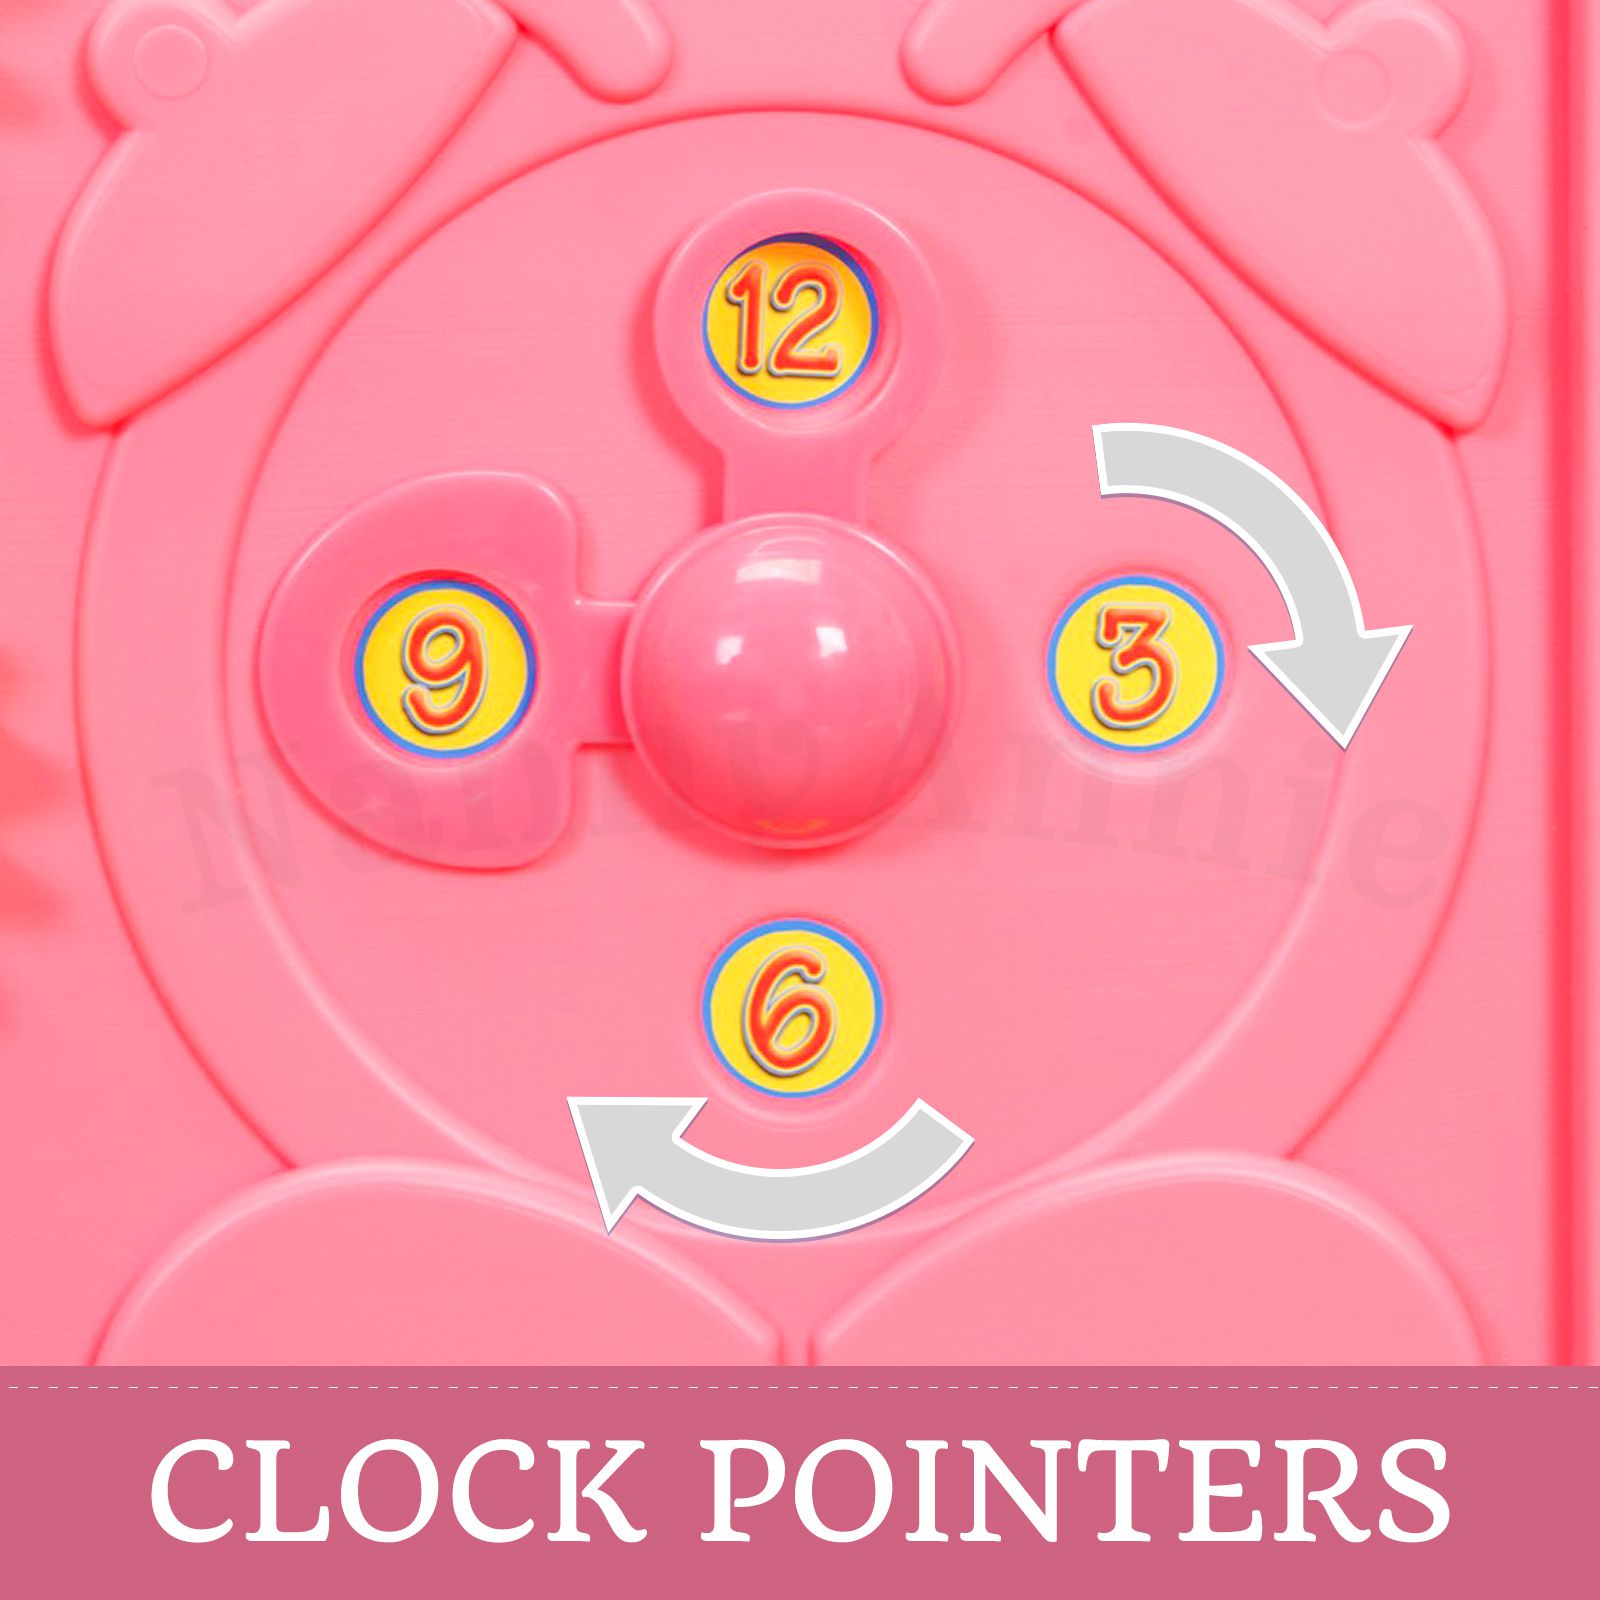 Baby Playpen With Door - Super Giant Interactive Play Room 2.3 x 2.3m - Pink